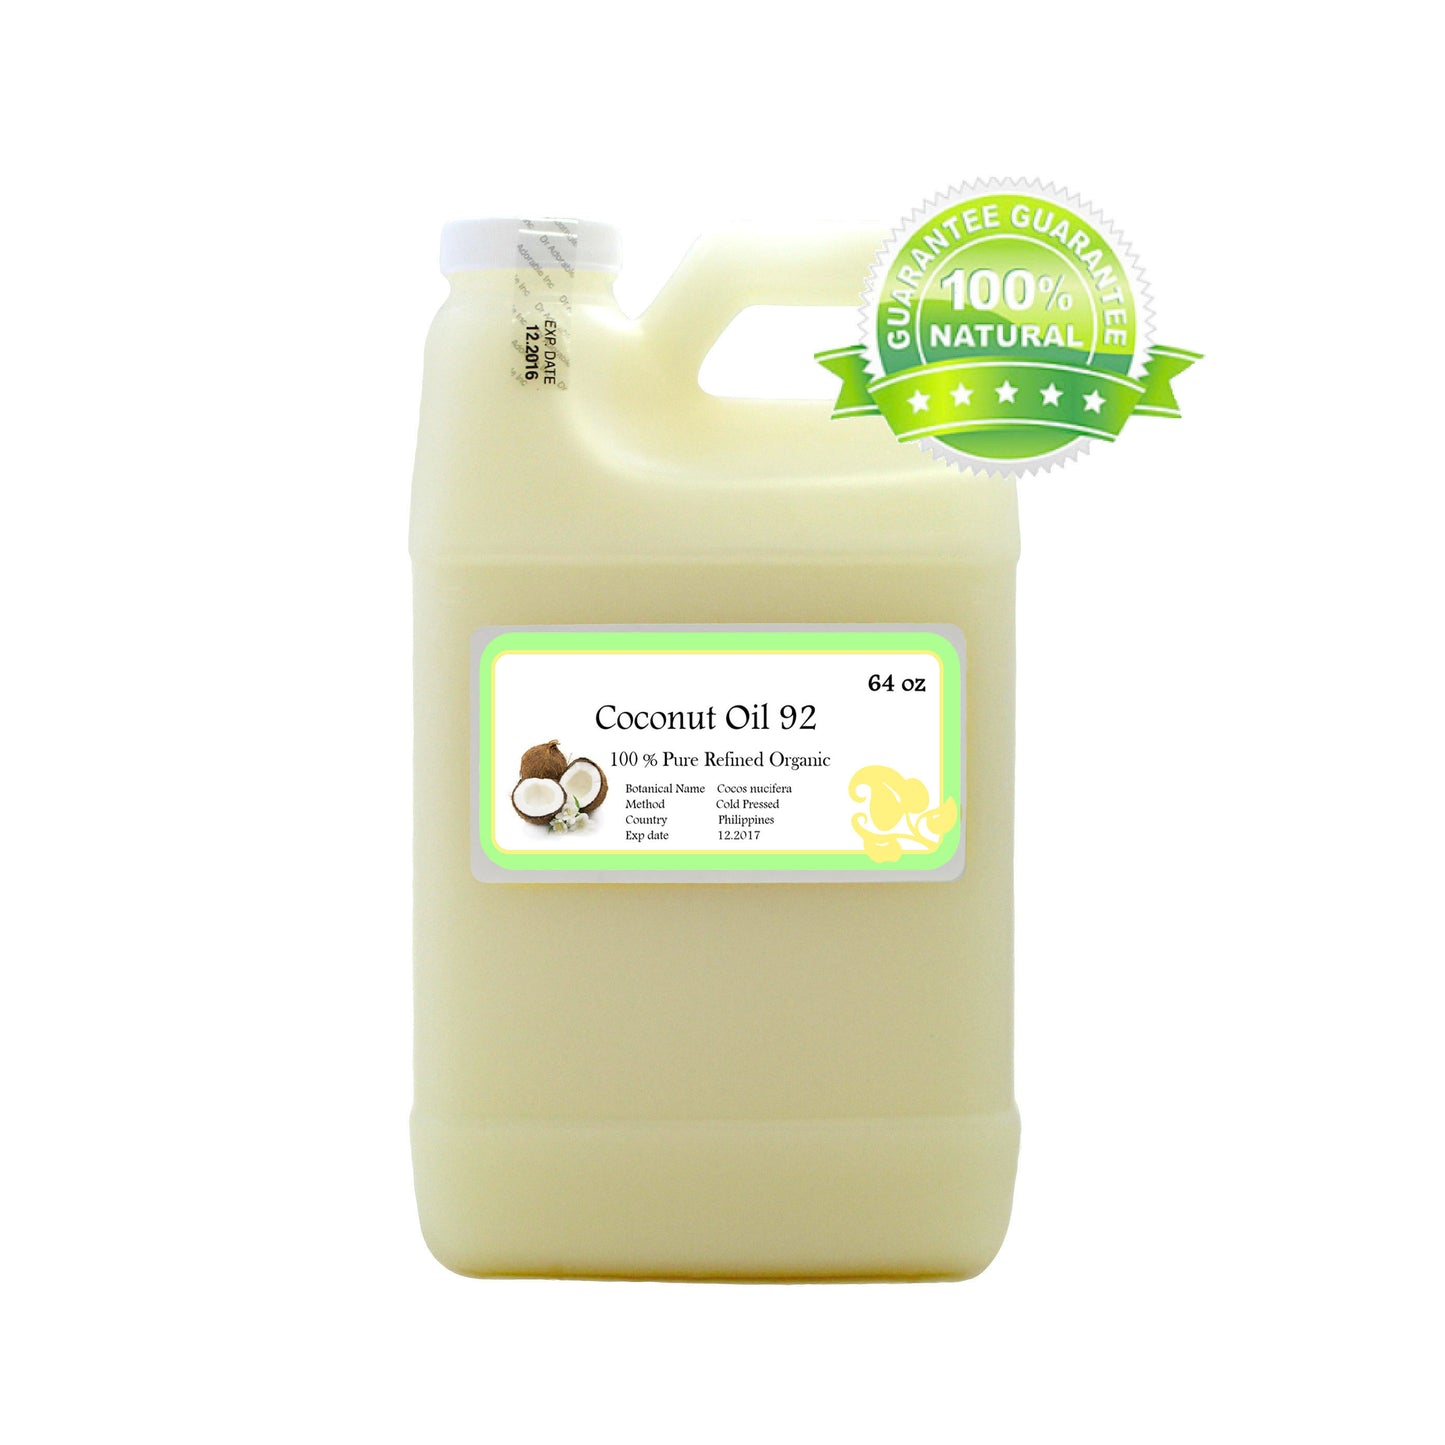 Coconut Oil 92 Degree - 100% Pure Natural Organic Cold Pressed